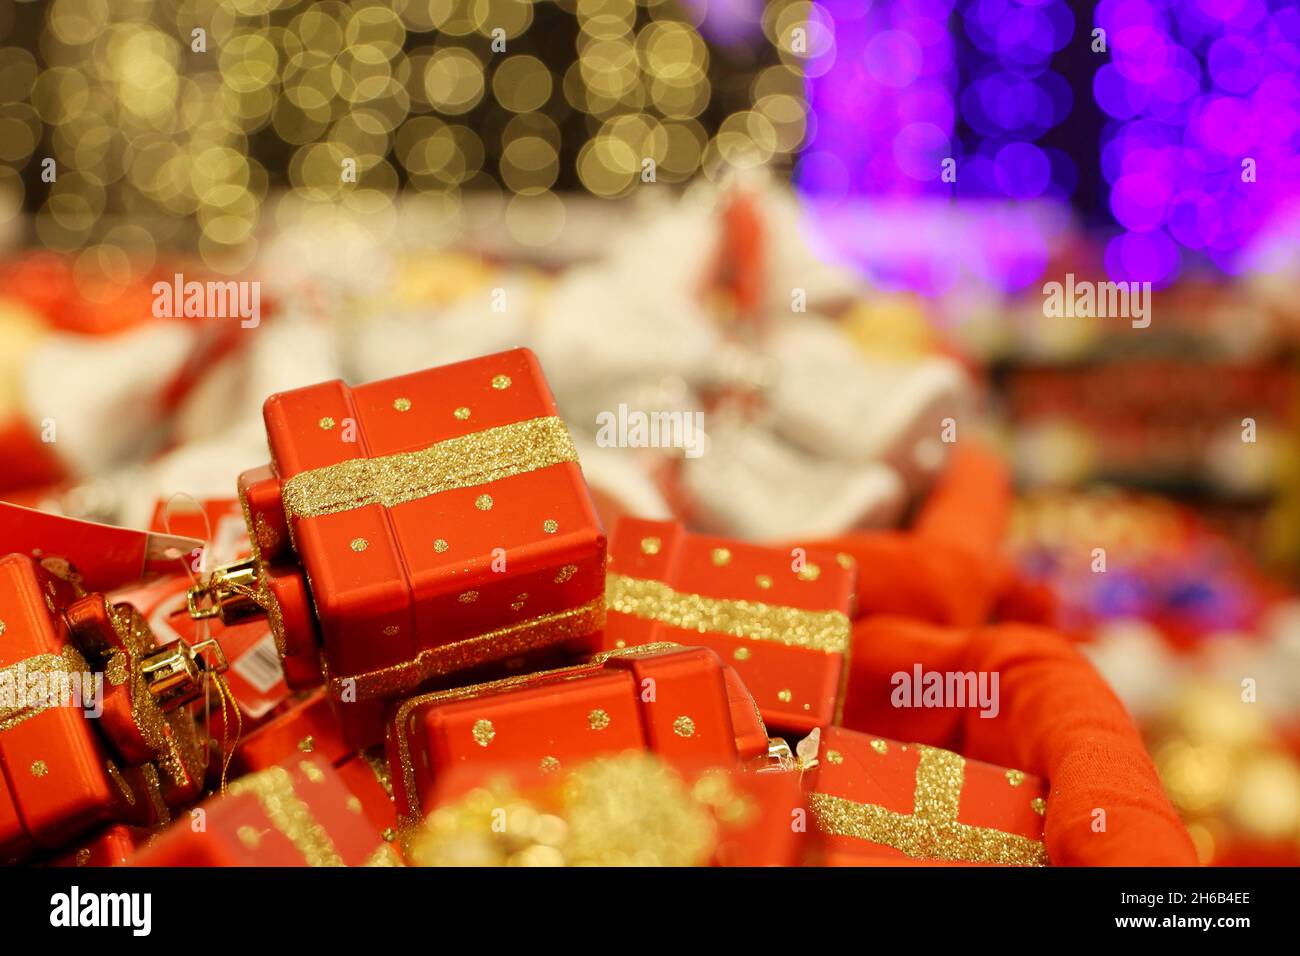 Weihnachtsspielzeug, rote Geschenkschachteln in einem Korb. Neujahrsdekoration in einem Geschäft auf unscharfem festlichem Hintergrund Stockfoto